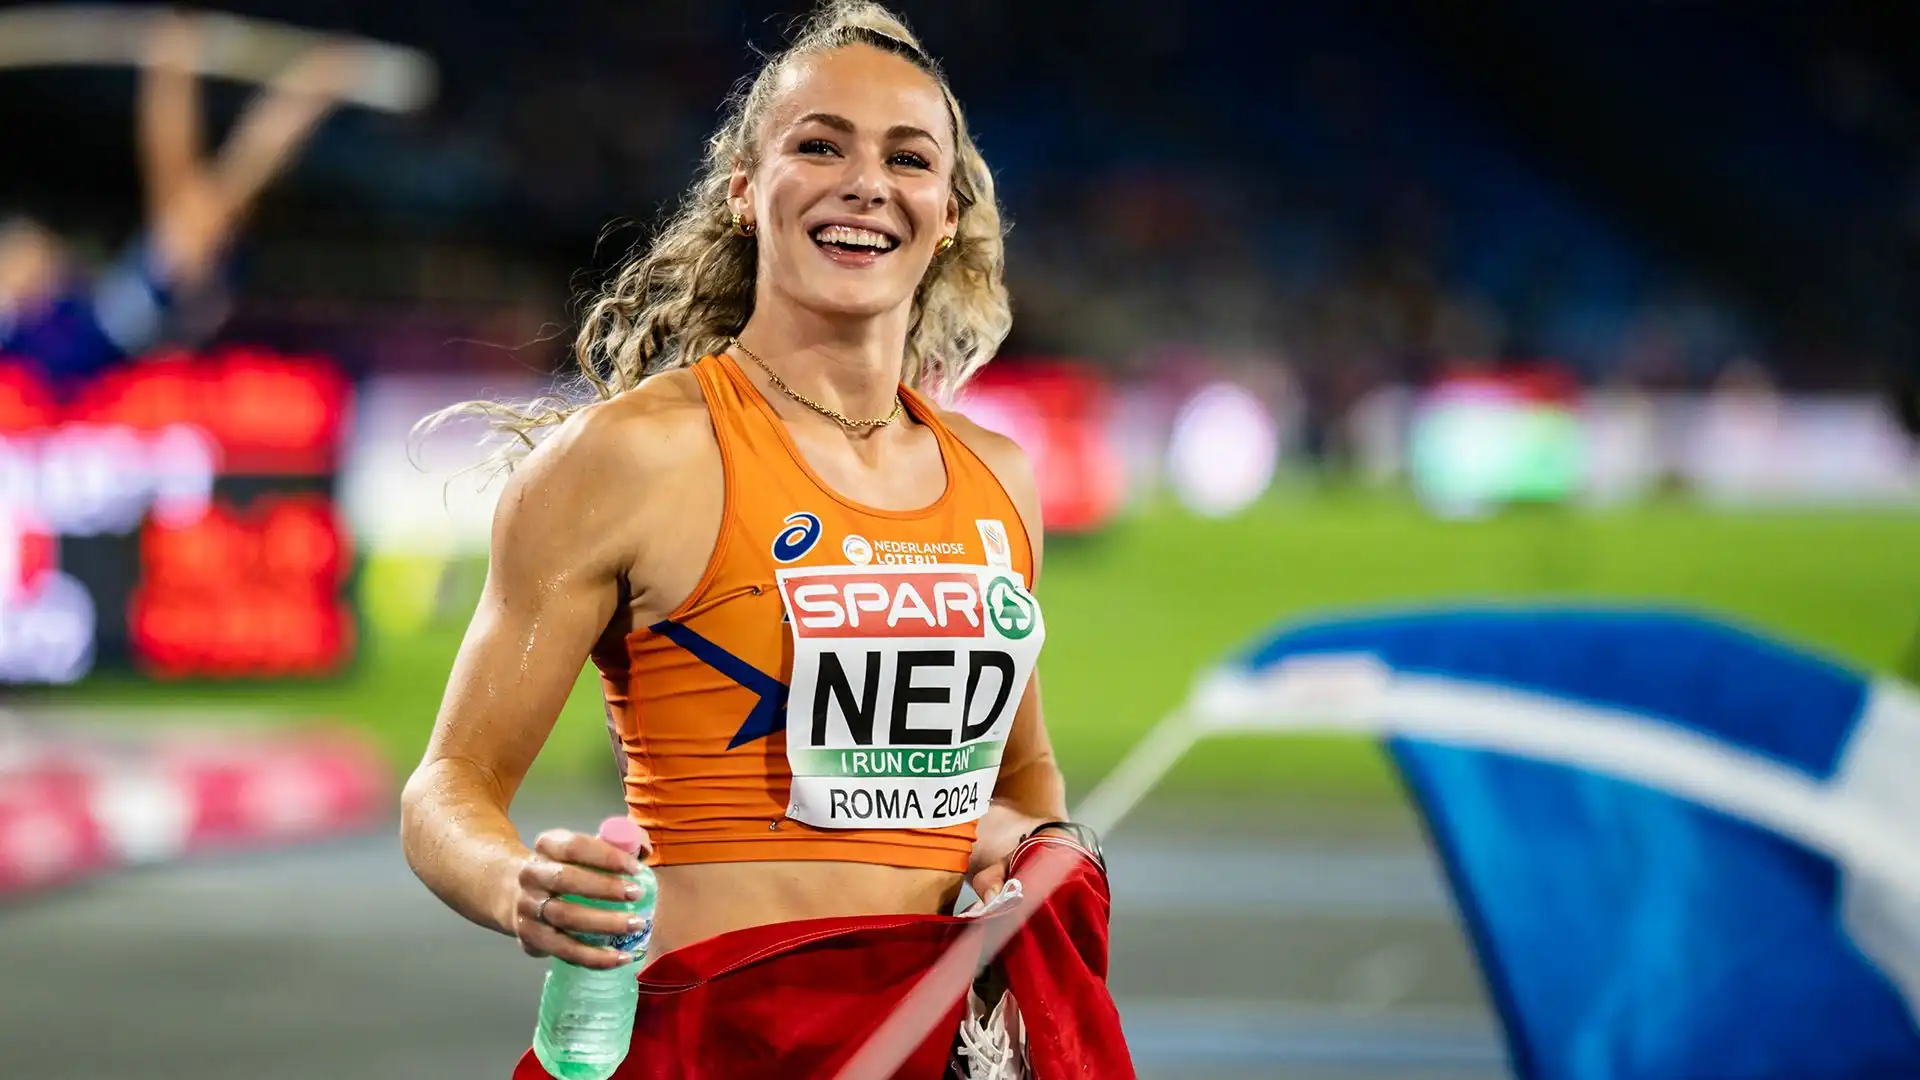 Lieke Klaver: talentuosa velocista olandese, eccelle nei 400 metri con una combinazione di velocità, resistenza e un incredibile spirito competitivo